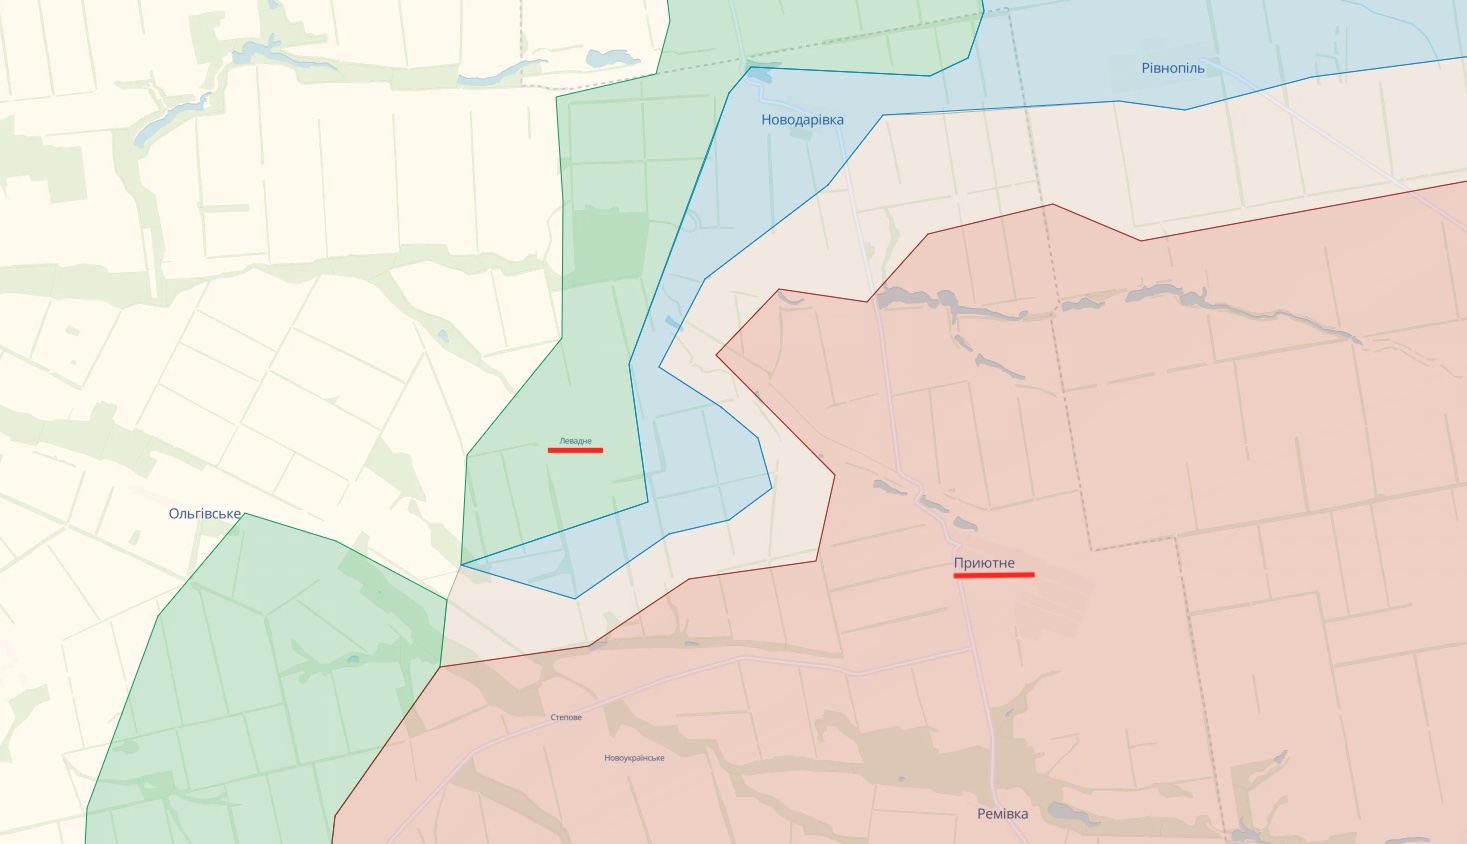 Генштаб: Силы обороны наступают на Мелитополь и Бердянск. Успех на трех участках – карта